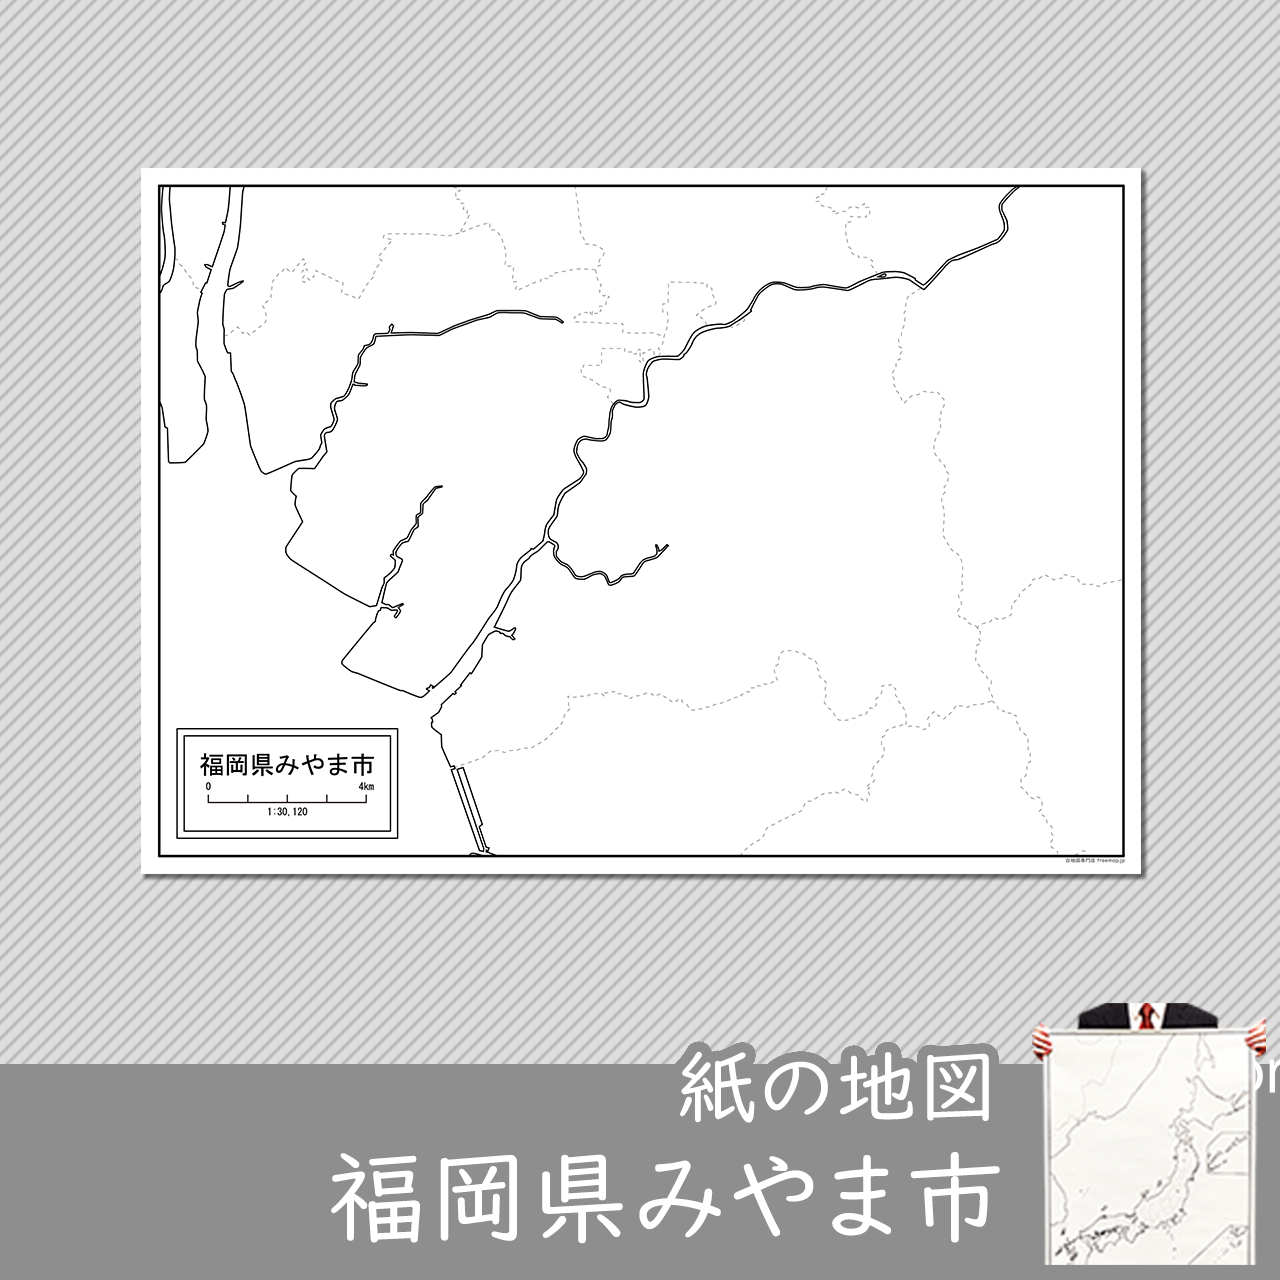 みやま市の紙の白地図のサムネイル